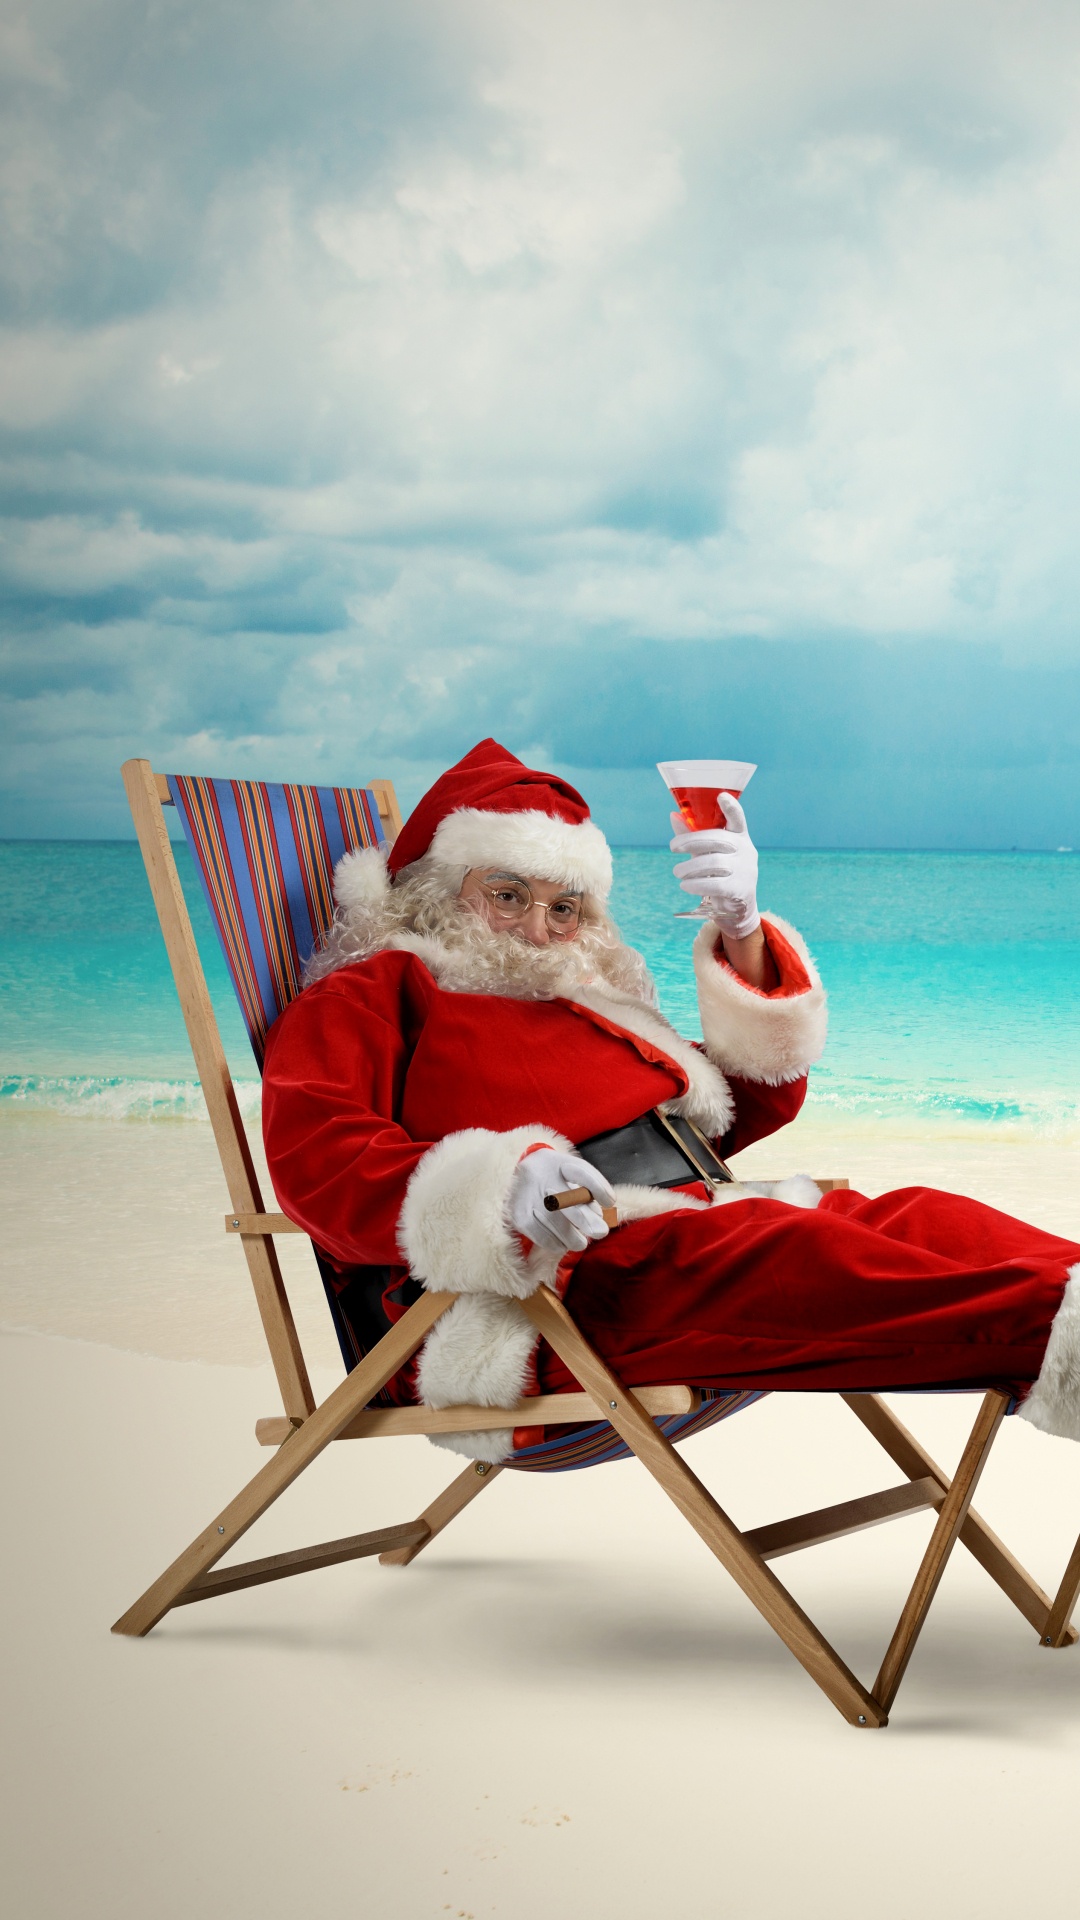 Weihnachtsmann, Weihnachten, Strand, Meer, Urlaub. Wallpaper in 1080x1920 Resolution